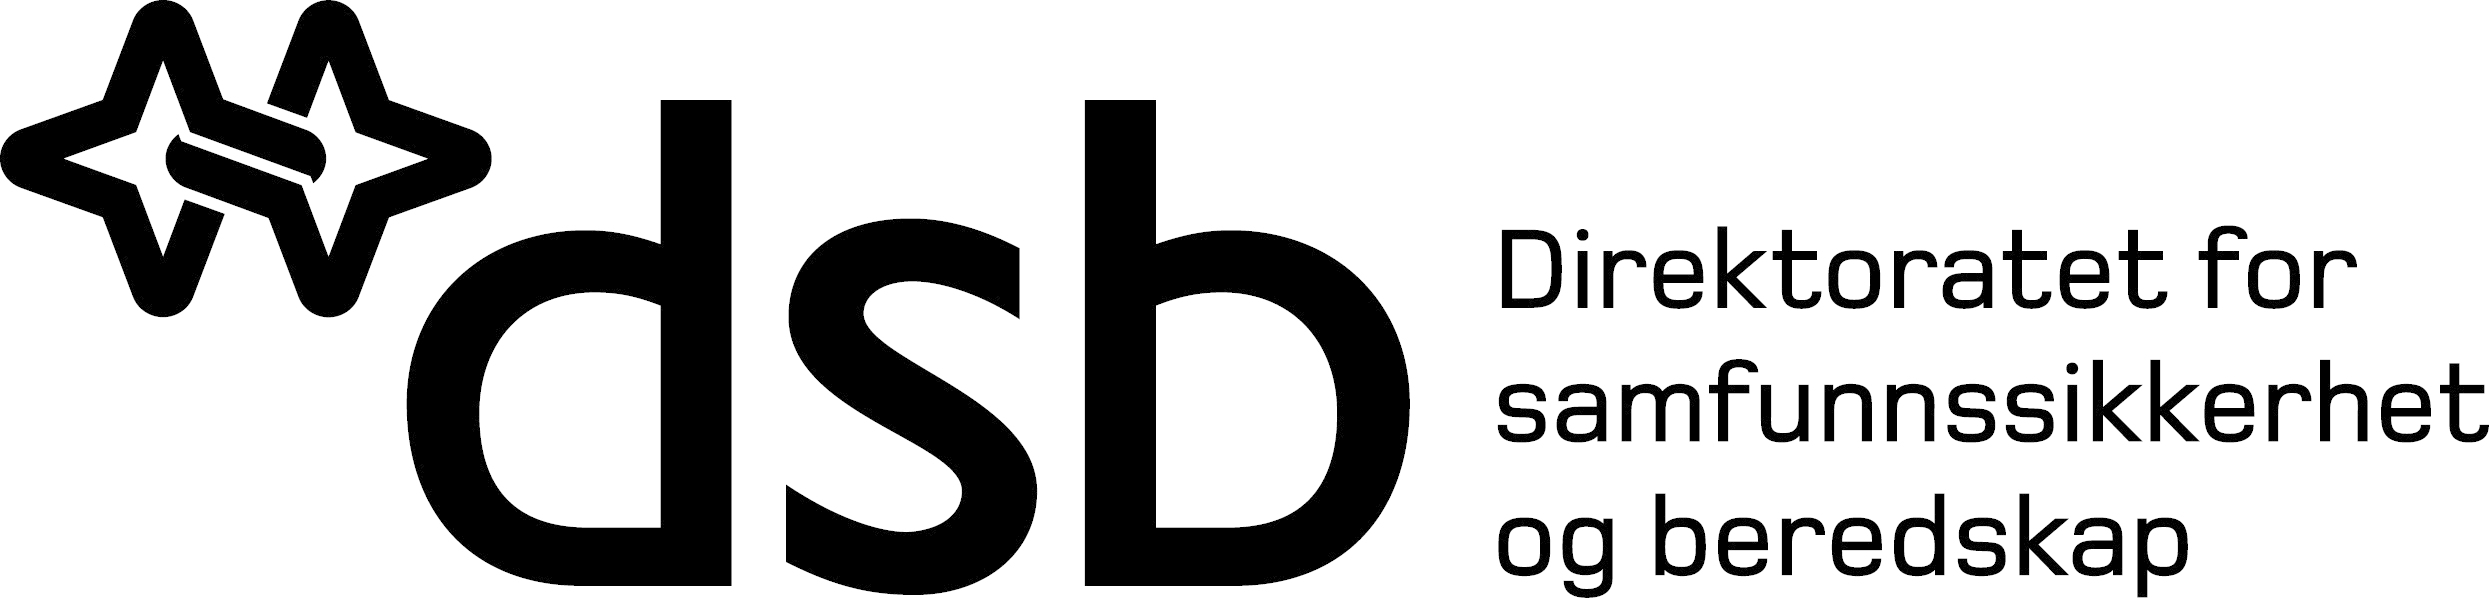 Logo DSB, i svart/hvitt